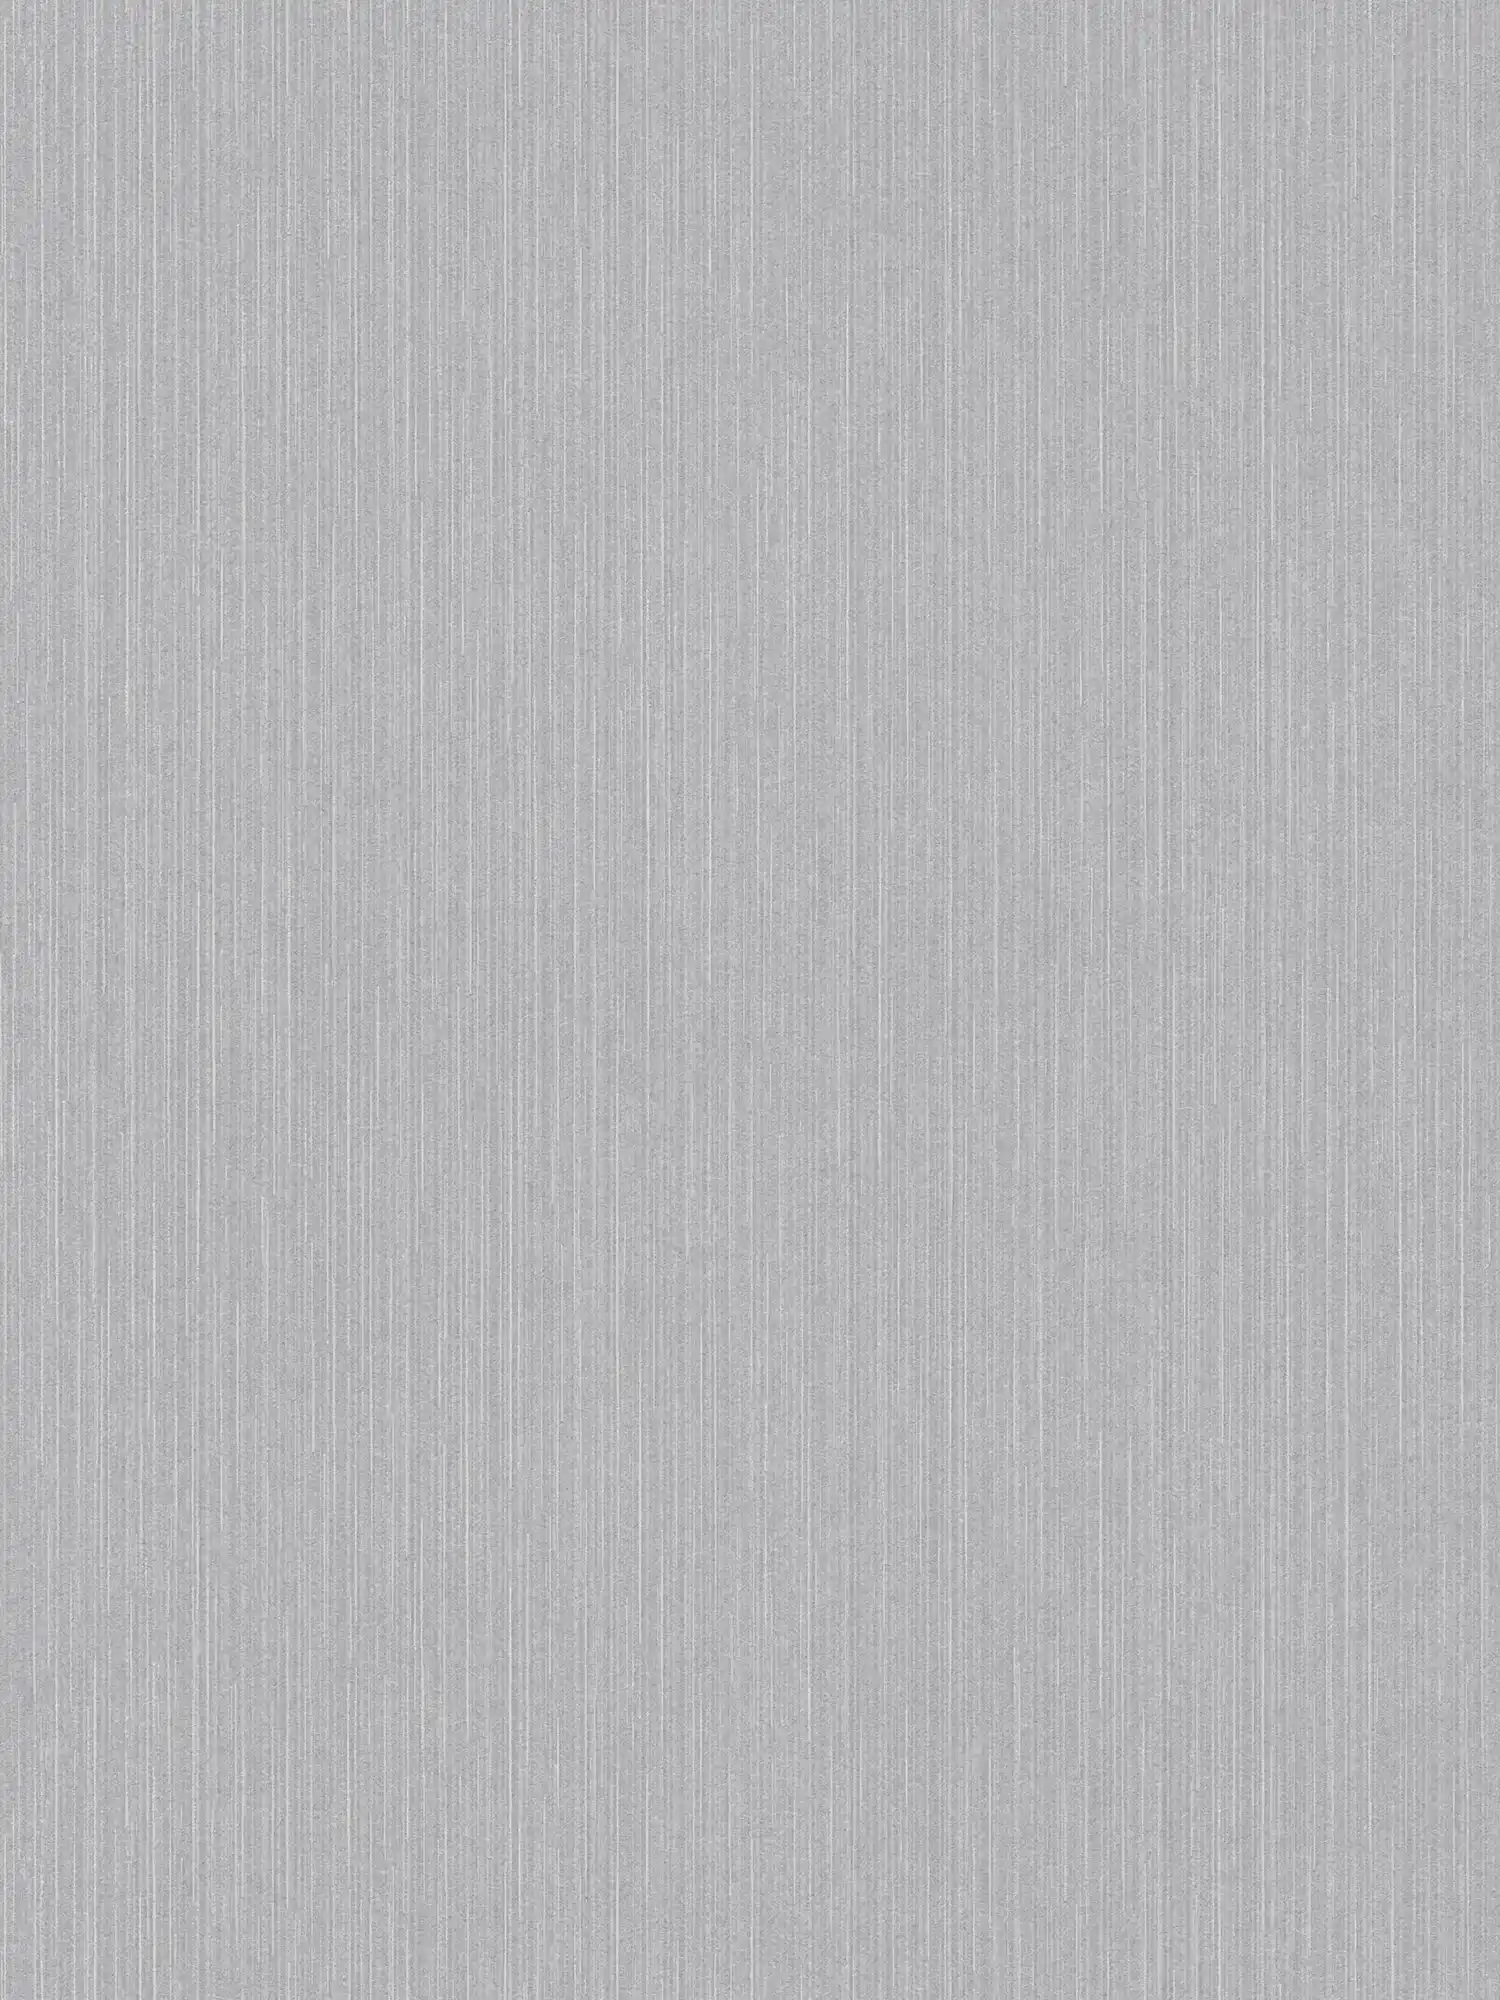 Hellgraue Vliestapete mit Glanzeffekt & liniertem Muster – Grau
